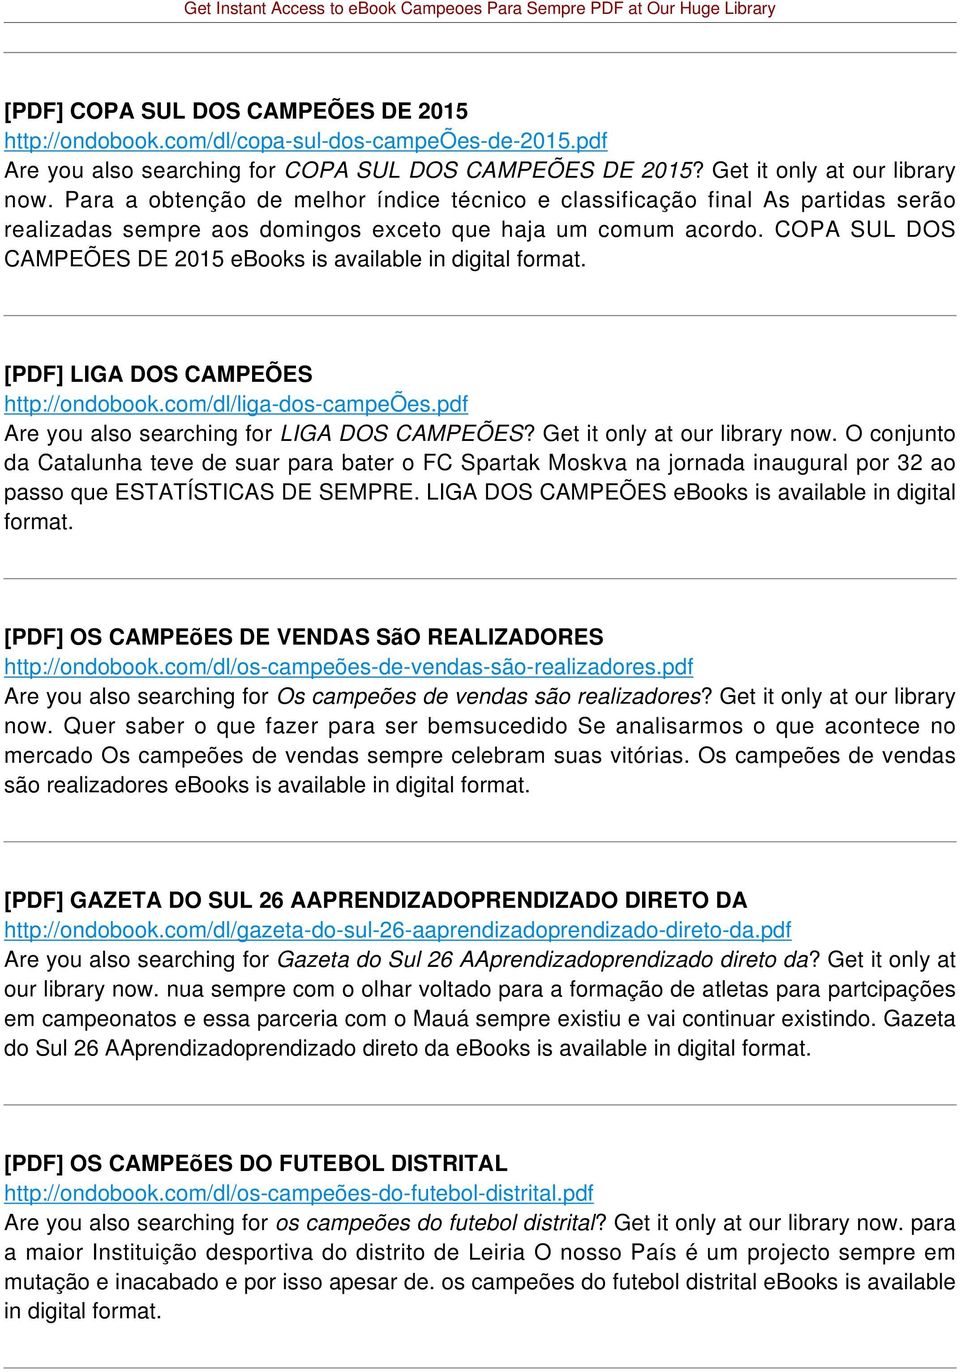 COPA SUL DOS CAMPEÕES DE 2015 ebooks is available [PDF] LIGA DOS CAMPEÕES http://ondobook.com/dl/liga-dos-campeões.pdf Are you also searching for LIGA DOS CAMPEÕES? Get it only at our library now.